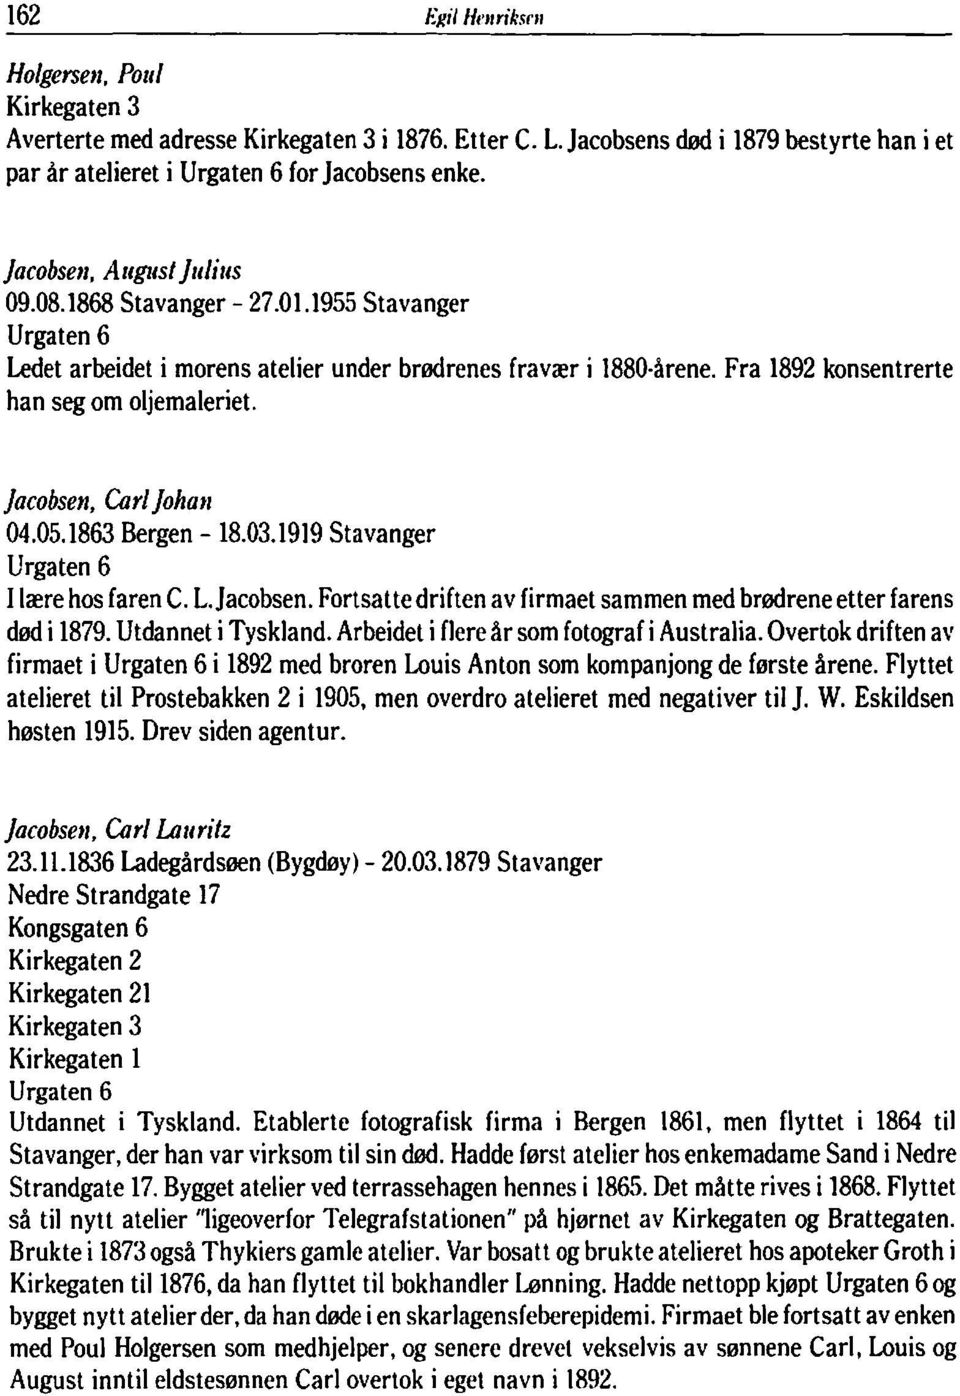 1863 Bergen - 18.03.1919 Stavanger Urgaten 6 I lære hos faren C. L.Jacobsen. Fortsatte driften av firmaet sammen med brødrene etter farens død i 1879. Utdannet i Tyskland.